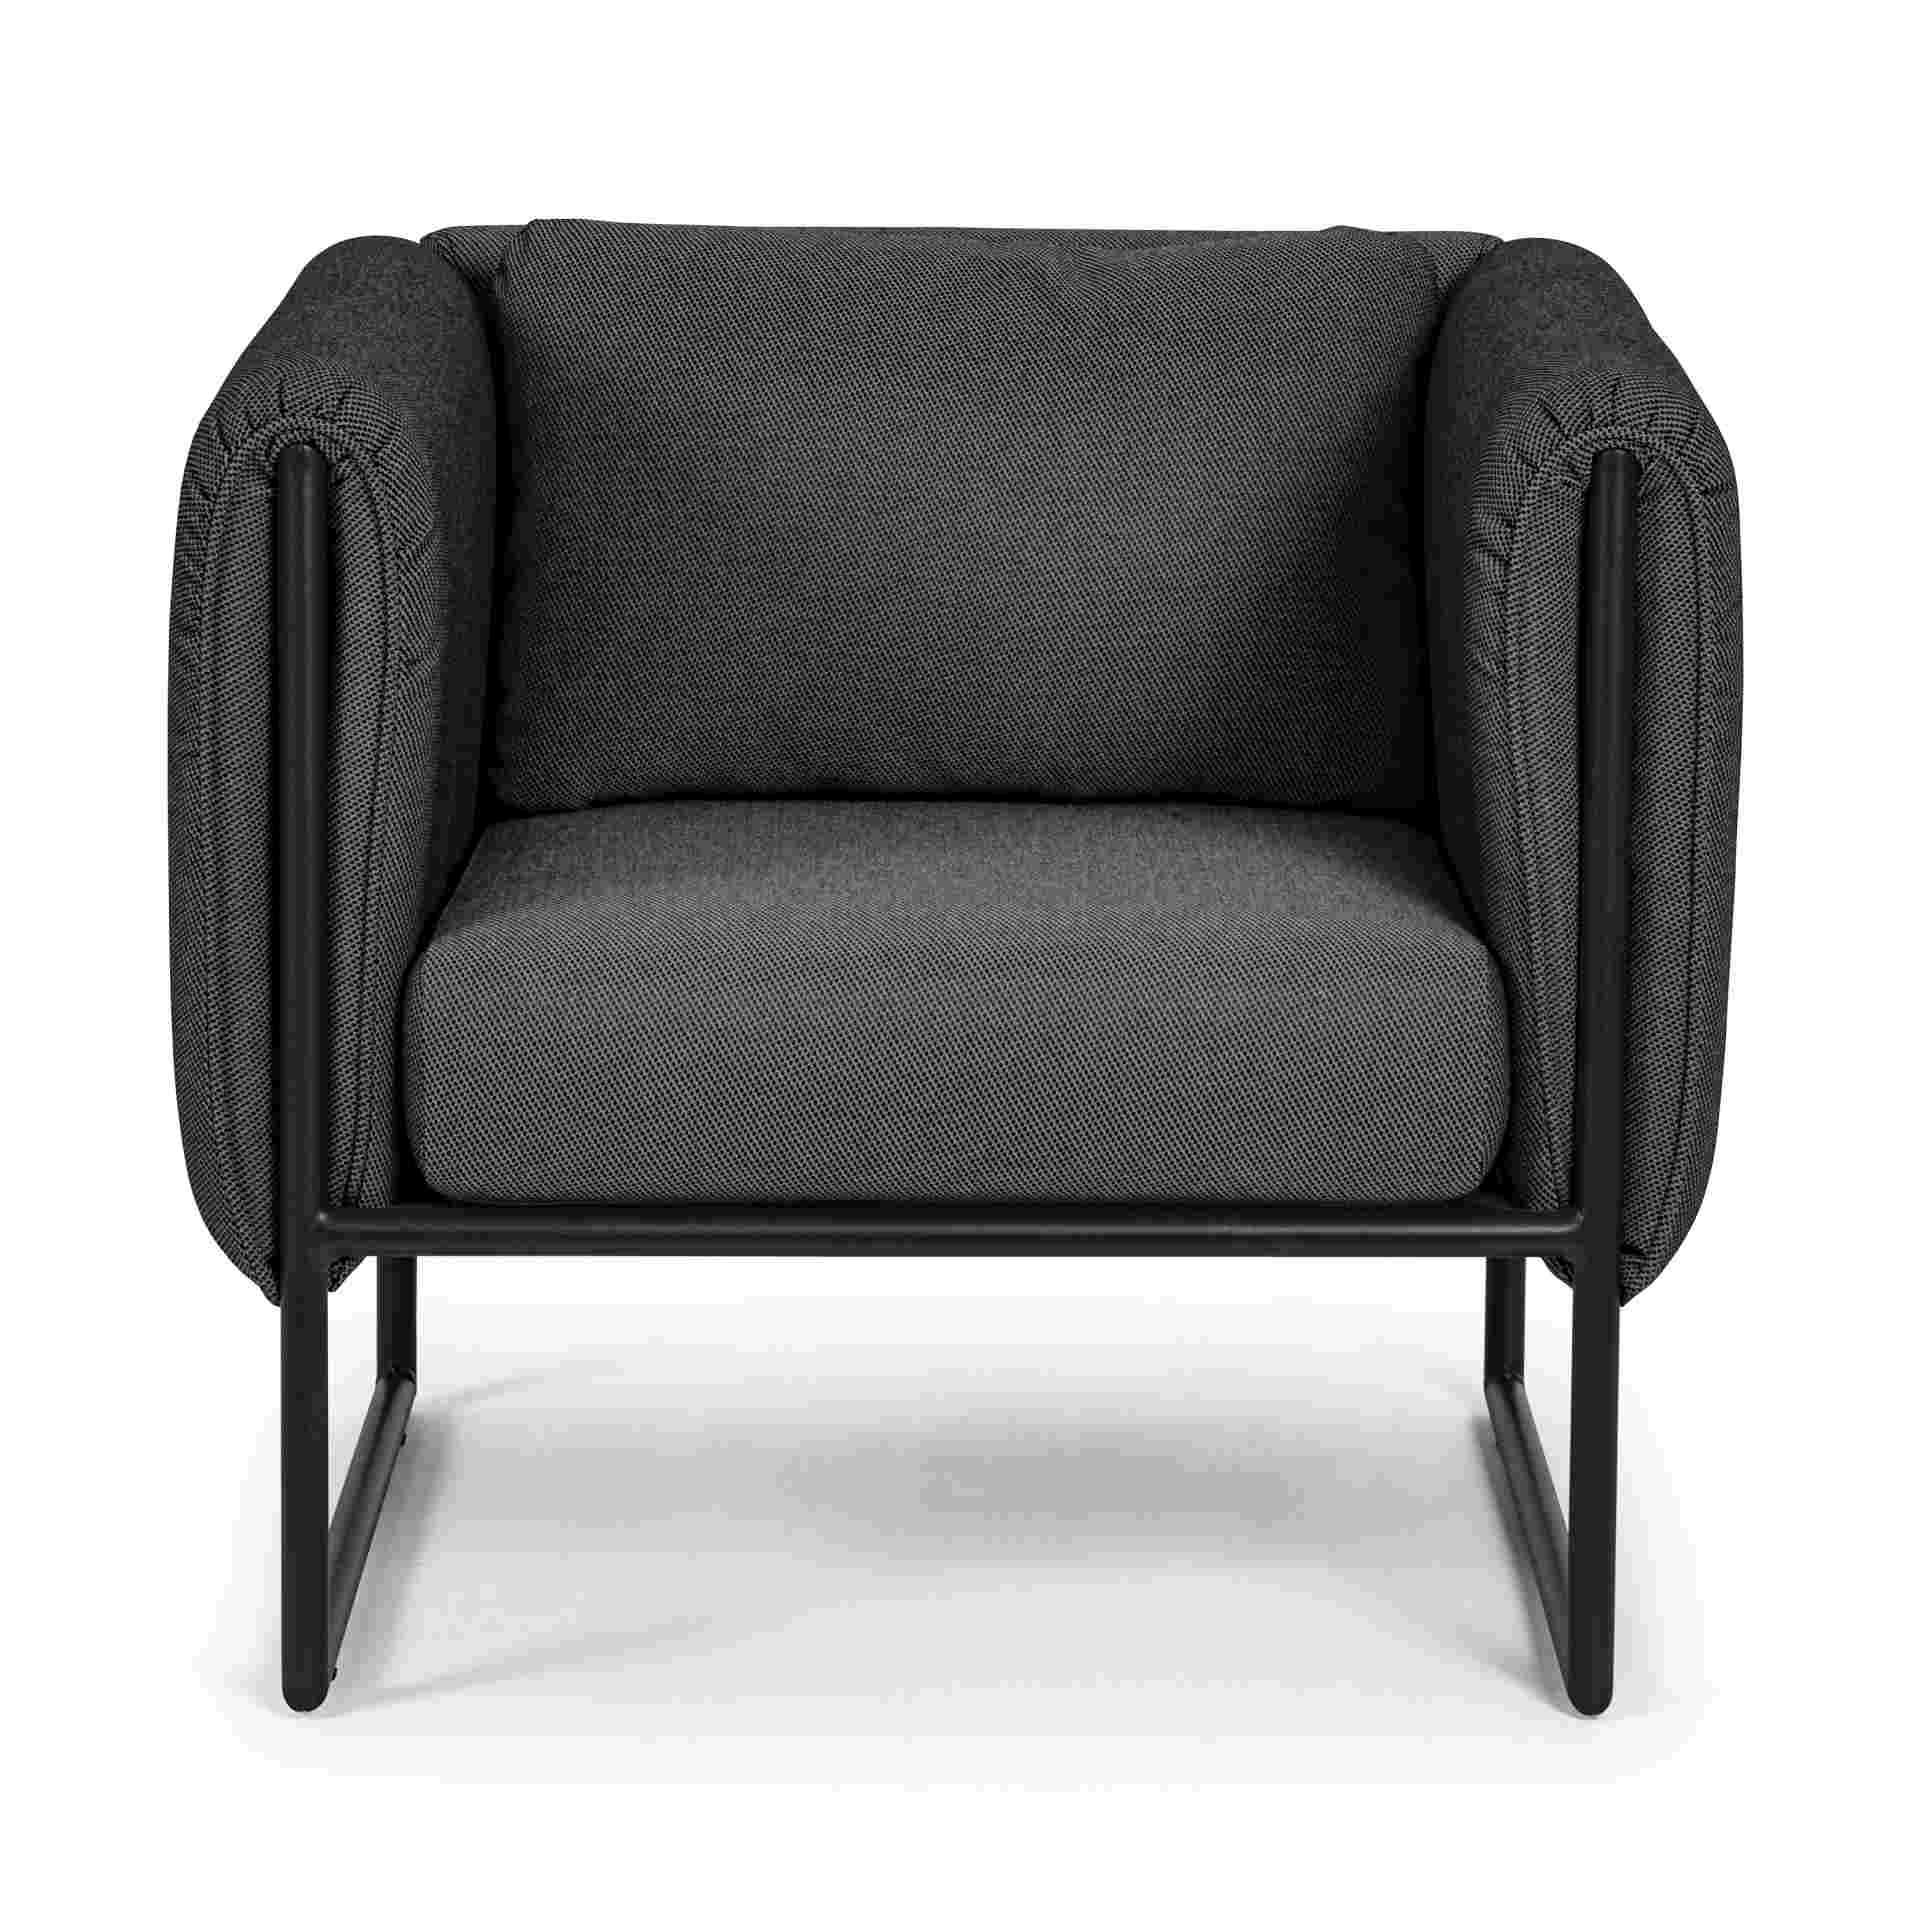 Der Gartensessel Pixel überzeugt mit seinem modernen Design. Gefertigt wurde er aus Olefin-Stoff, welcher einen Anthrazit Farbton besitzt. Das Gestell ist aus Aluminium und hat eine schwarze Farbe. Der Sessel verfügt über eine Sitzhöhe von 42 cm und ist f